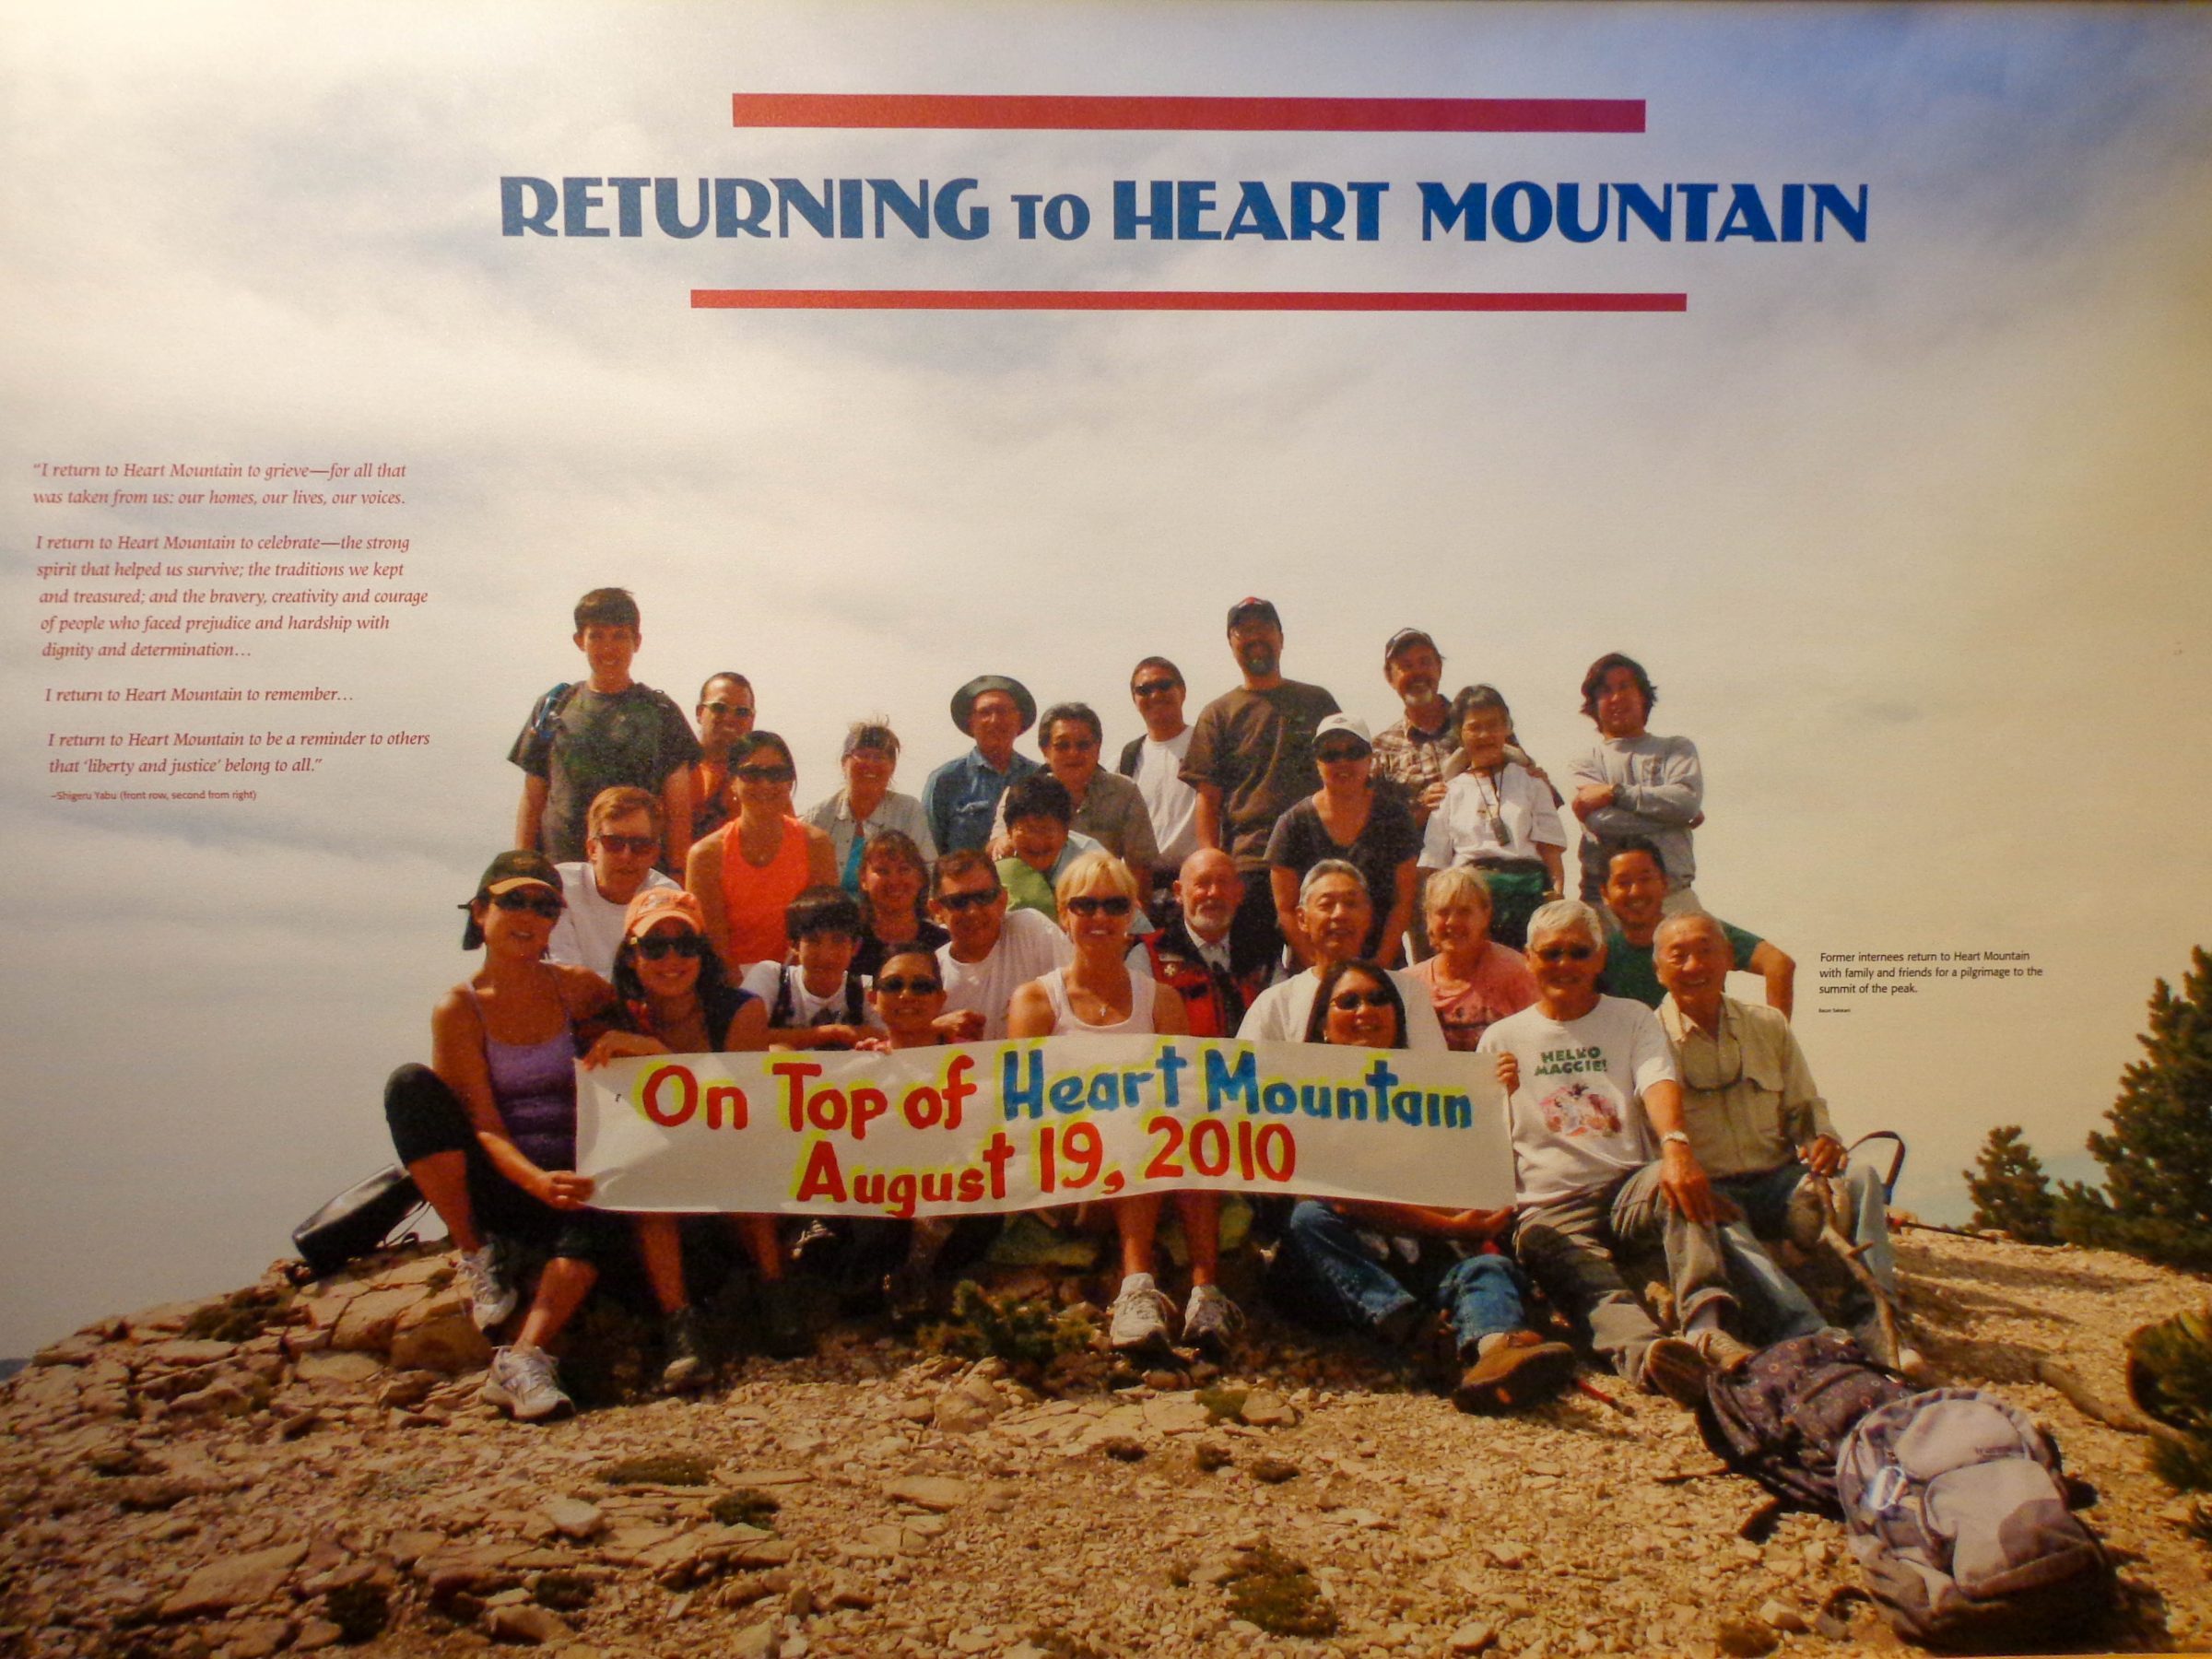 2010 kehrte eine Gruppe ehemaliger japanischer Lagerinsassen nach Heart Mountain zurück